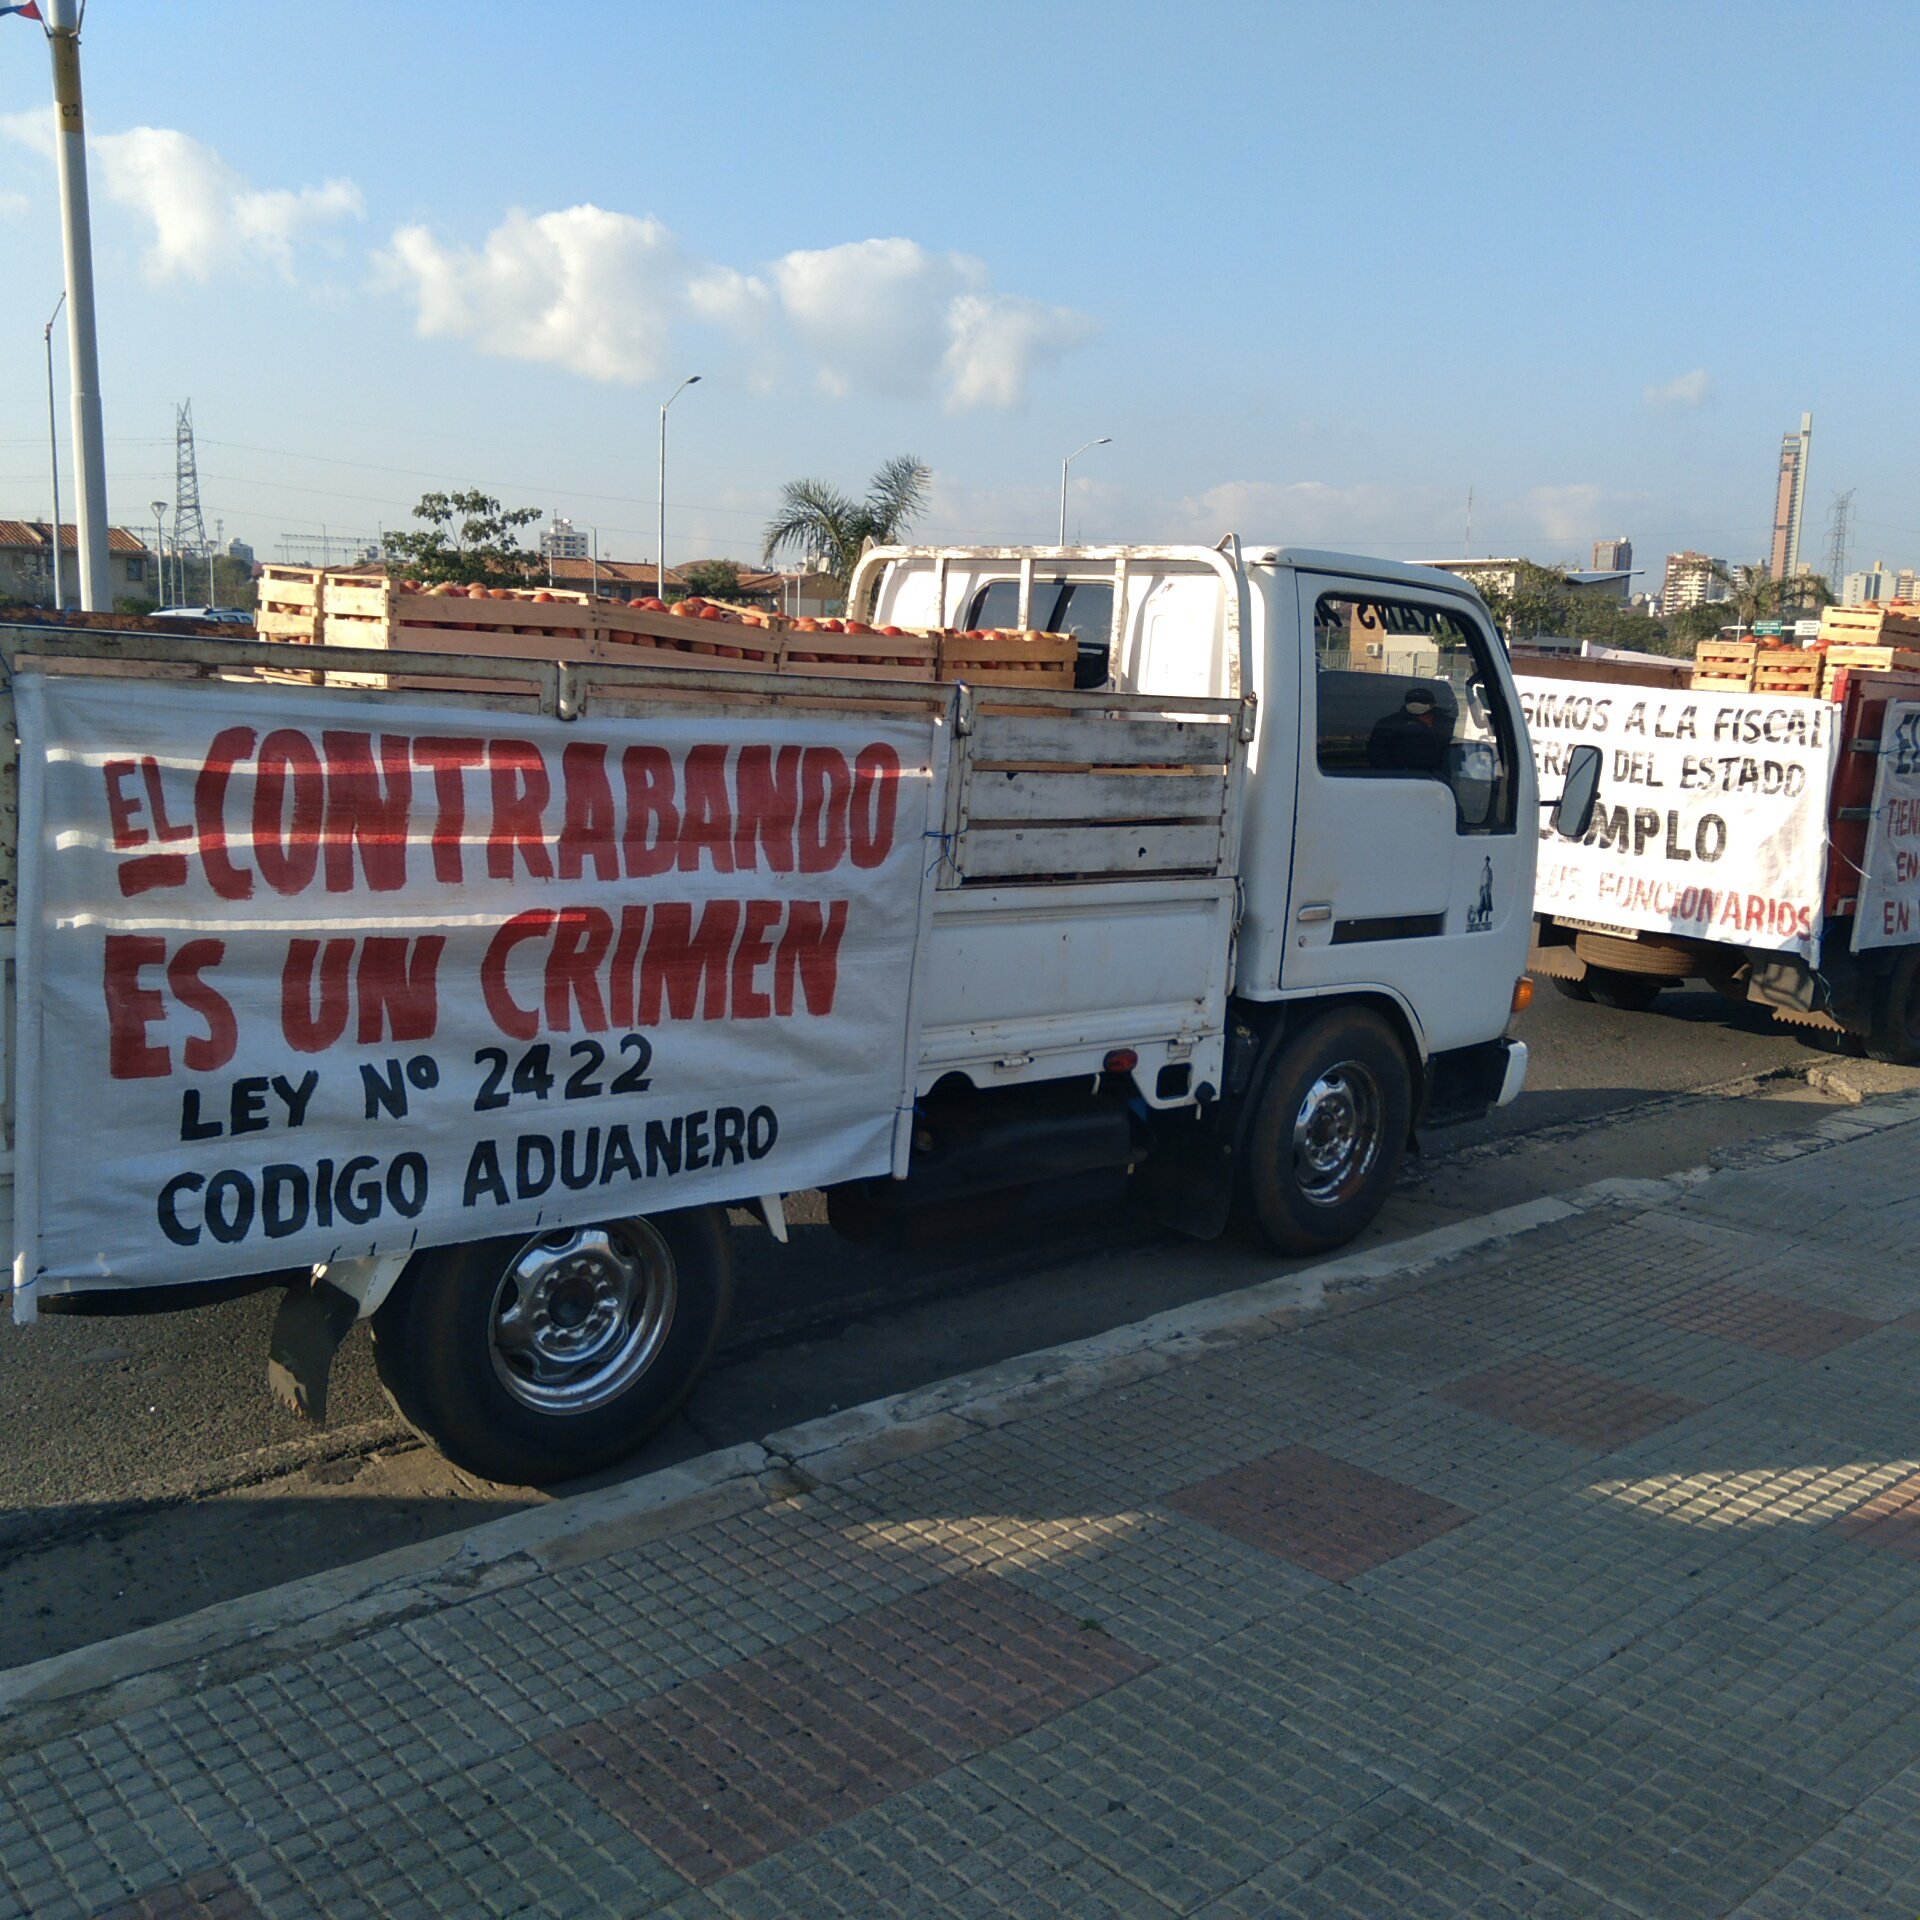 Manifestación de industriales y productores en la Costanera de Asunción, en repudio al contrabando. Foto: @Clarymv